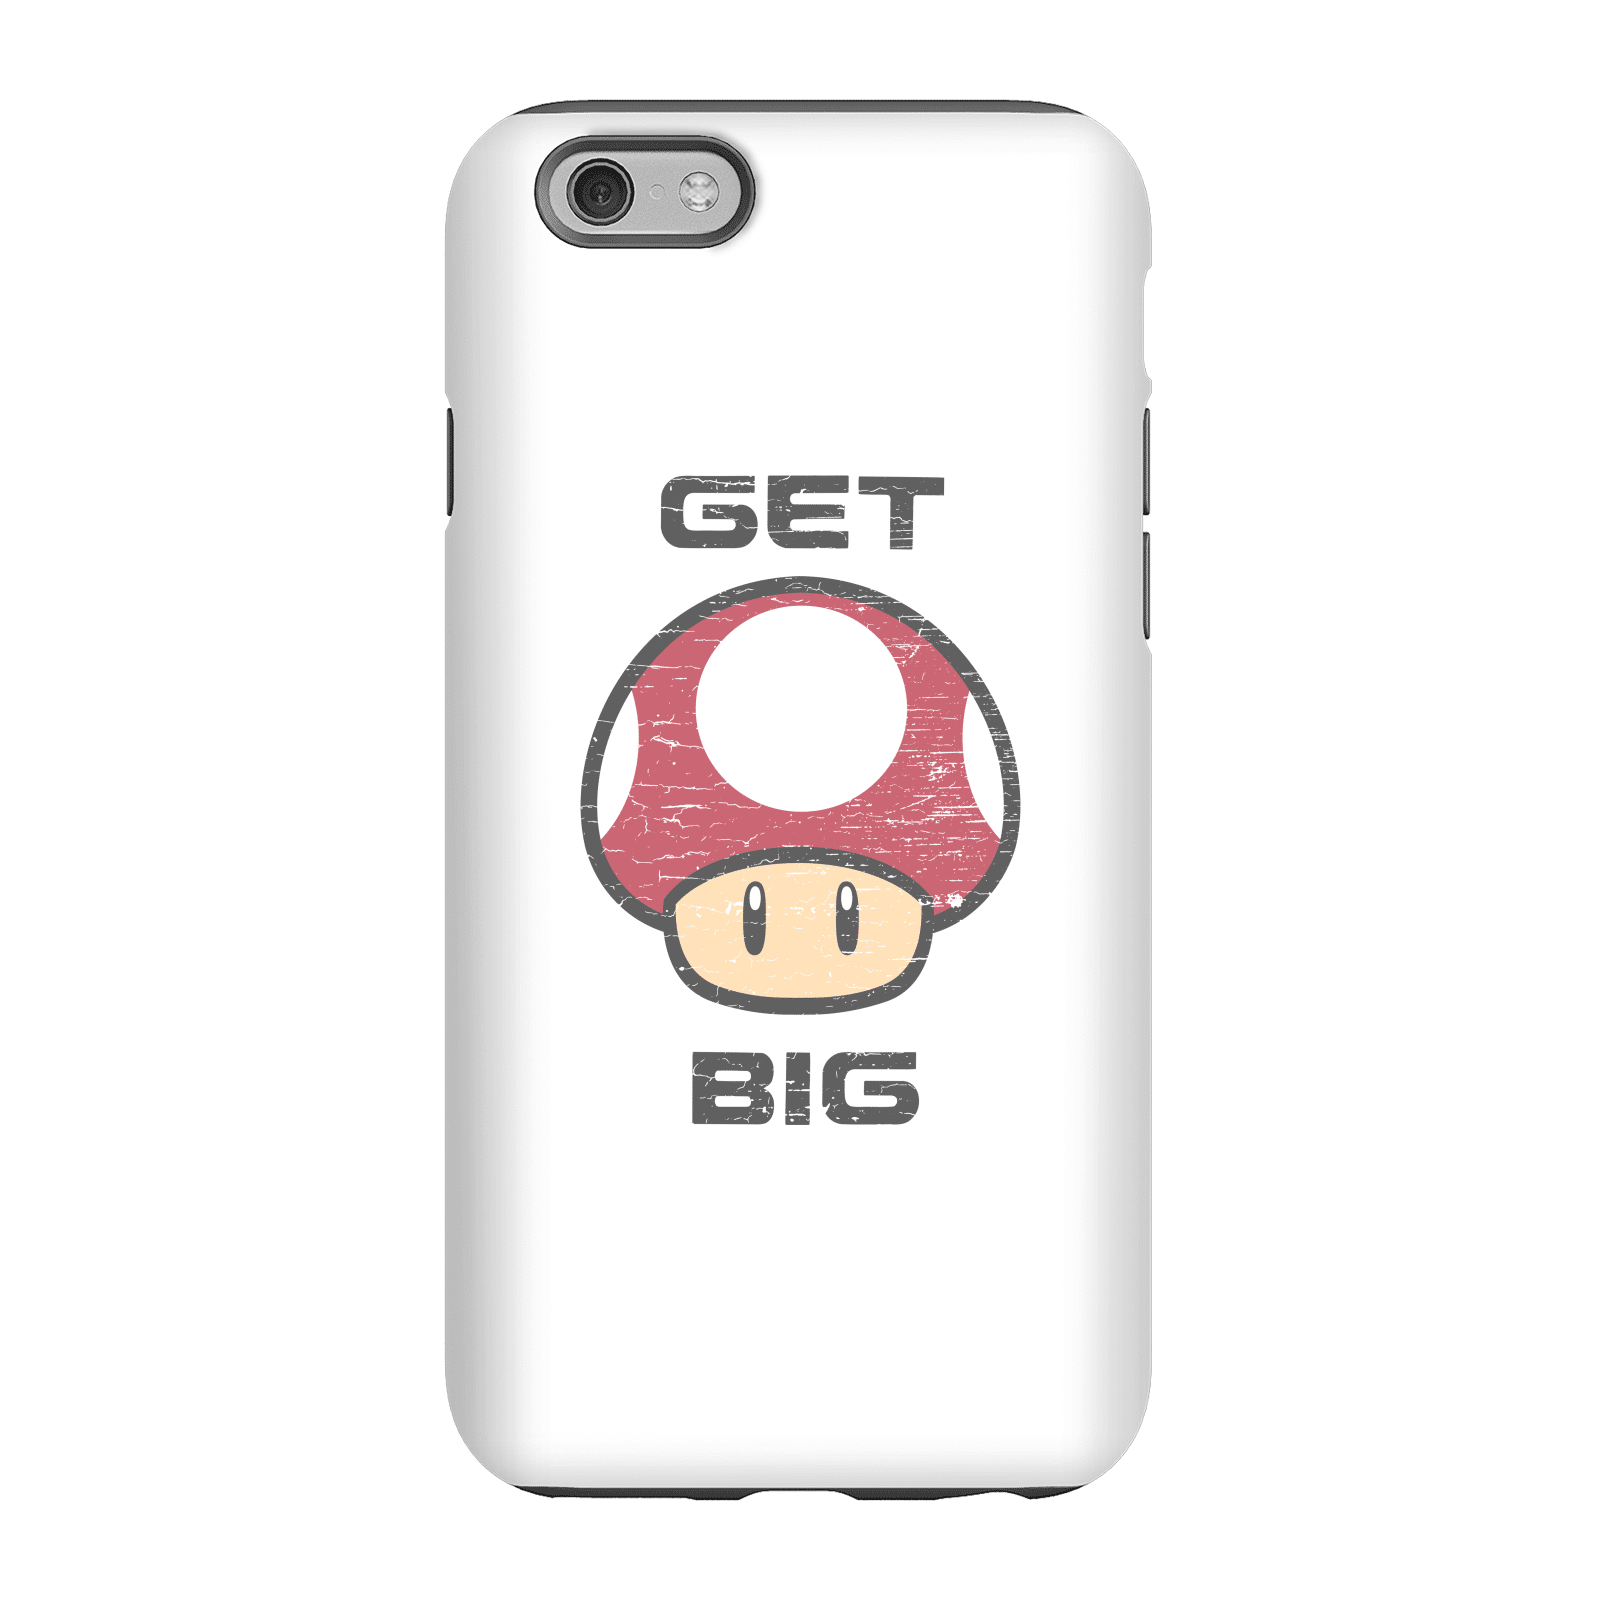 Nintendo Super Mario Get Big Mushroom Phone Case - iPhone 6S - Tough Case - Matte